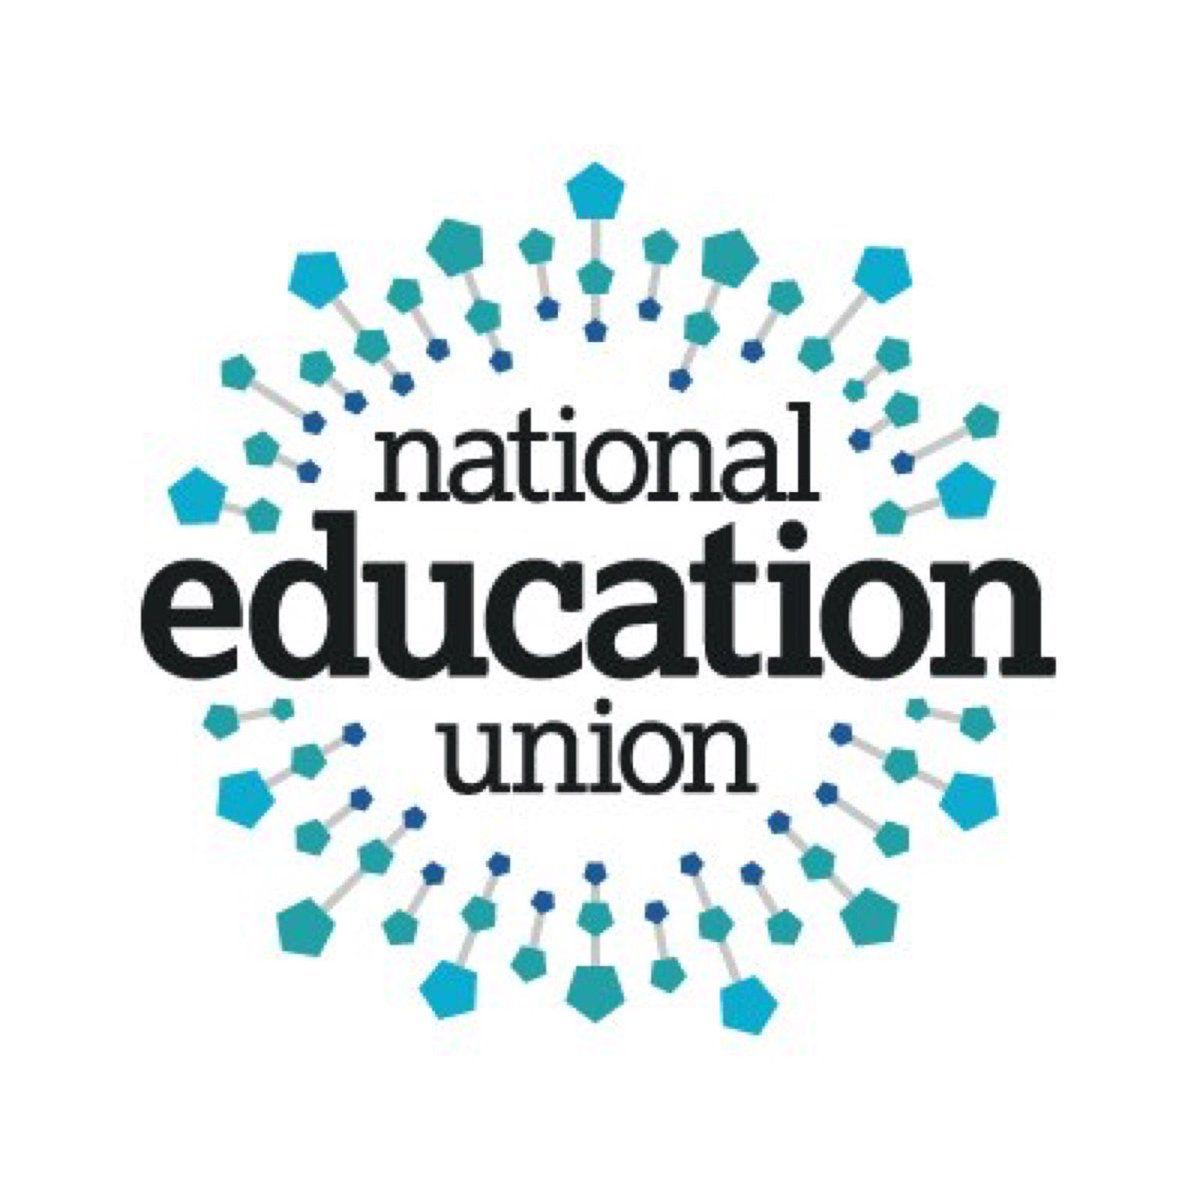 Neu Logo - National Education Union joins Refugee Week partnership | Refugee Week